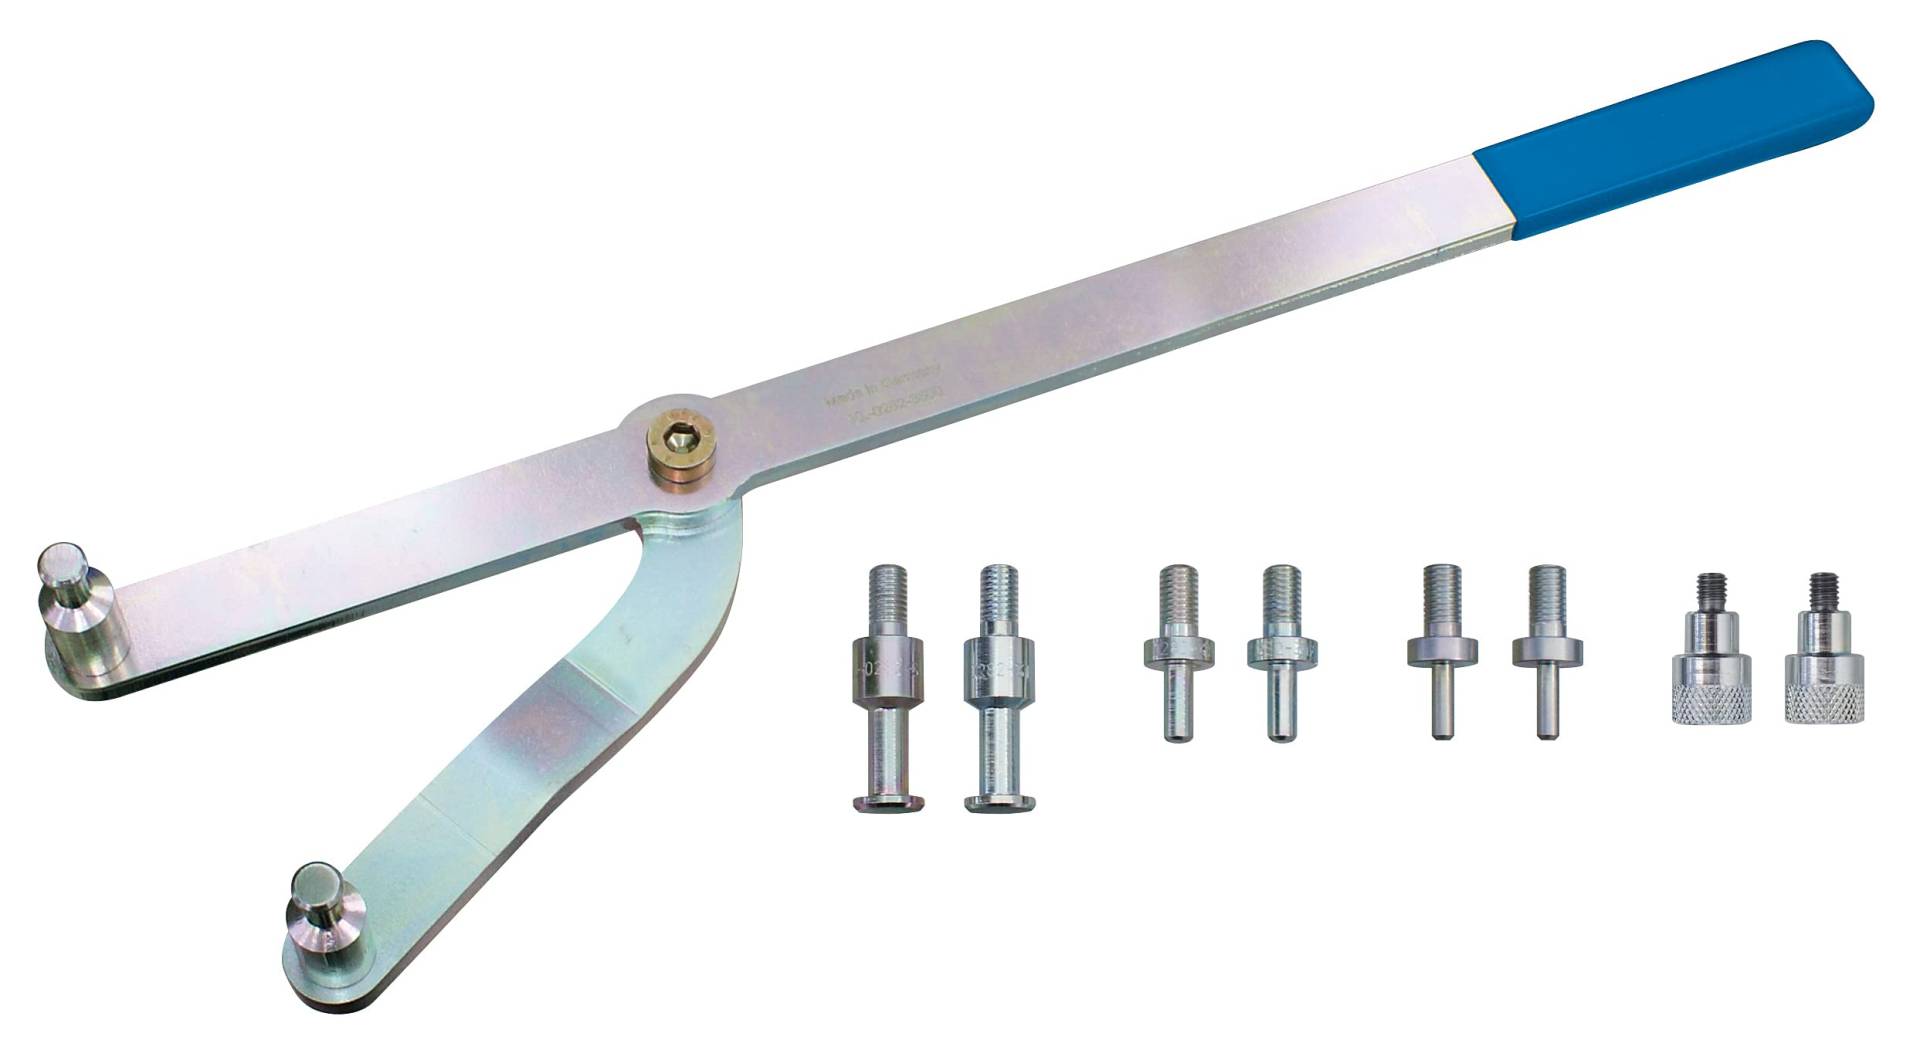 GEDORE Automotive Gegenhalteschlüssel, verstellbar, universell, für Lochkreis-Ø 14-130 mm, 470 mm Länge, Spezialwerkzeug, KL-0282-35 C von GEDORE